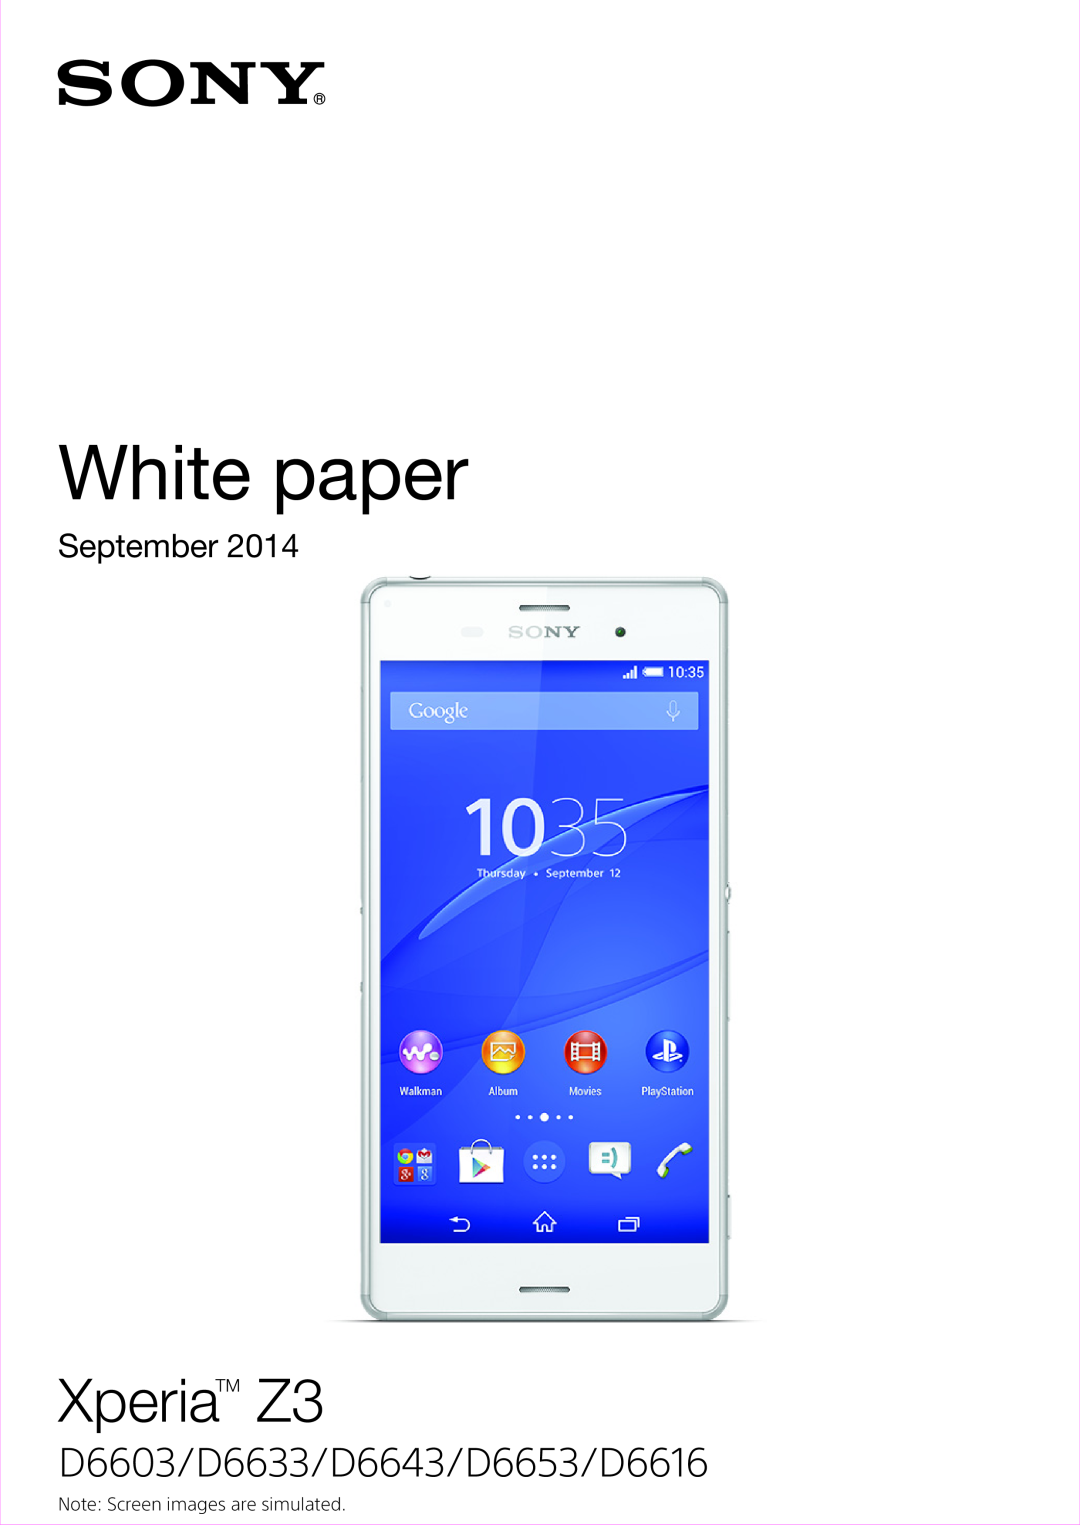 Sony manual White paper, XperiaTM Z3, D6603/D6633/D6643/D6653/D6616, September 